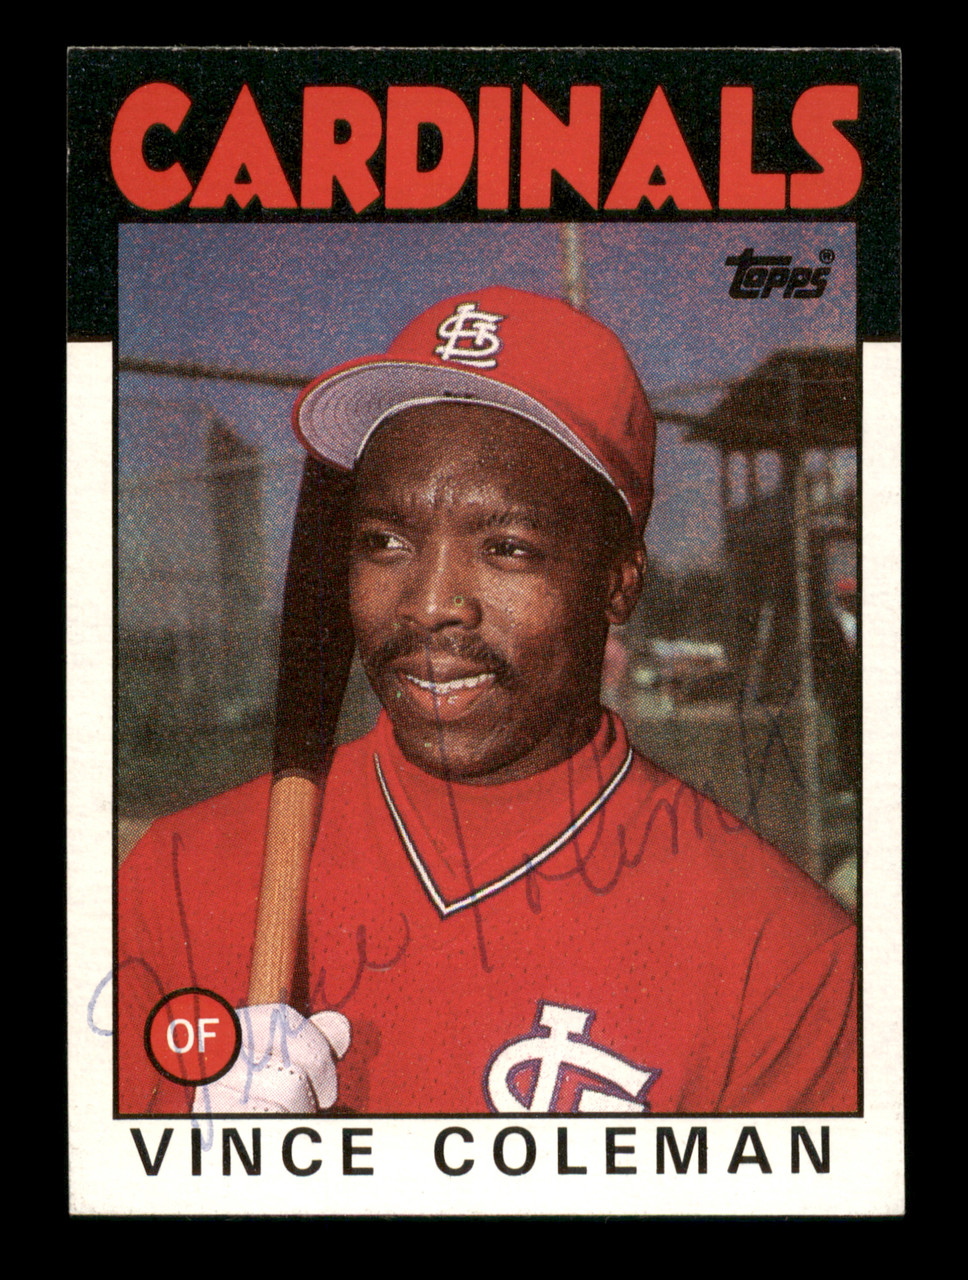 Vince Coleman Autographed 1986 Topps Card #370 St. Louis Cardinals